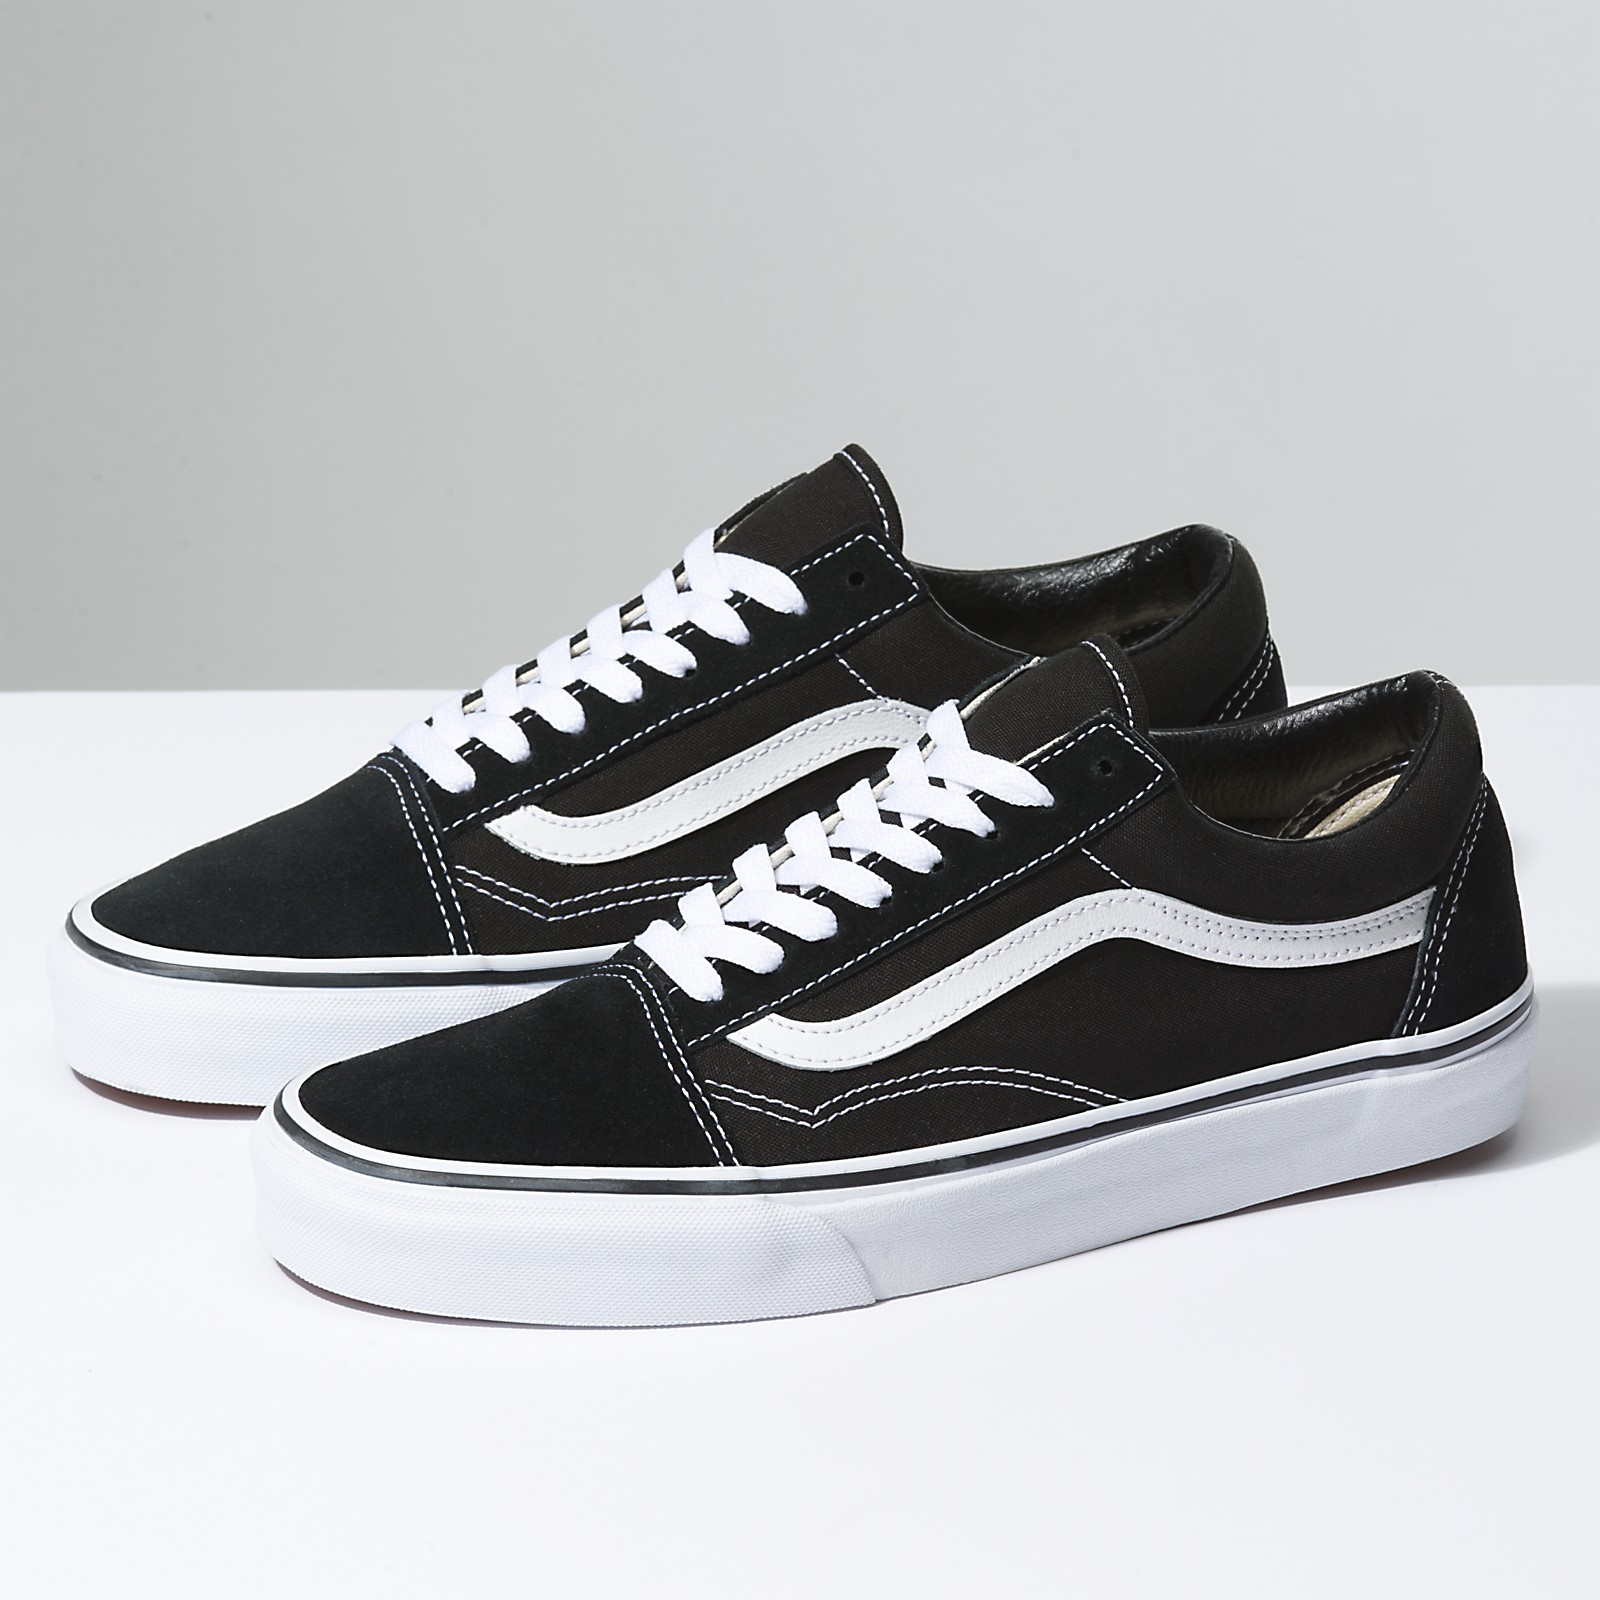 Vans Old Skool Classic Skate Shoes – Black